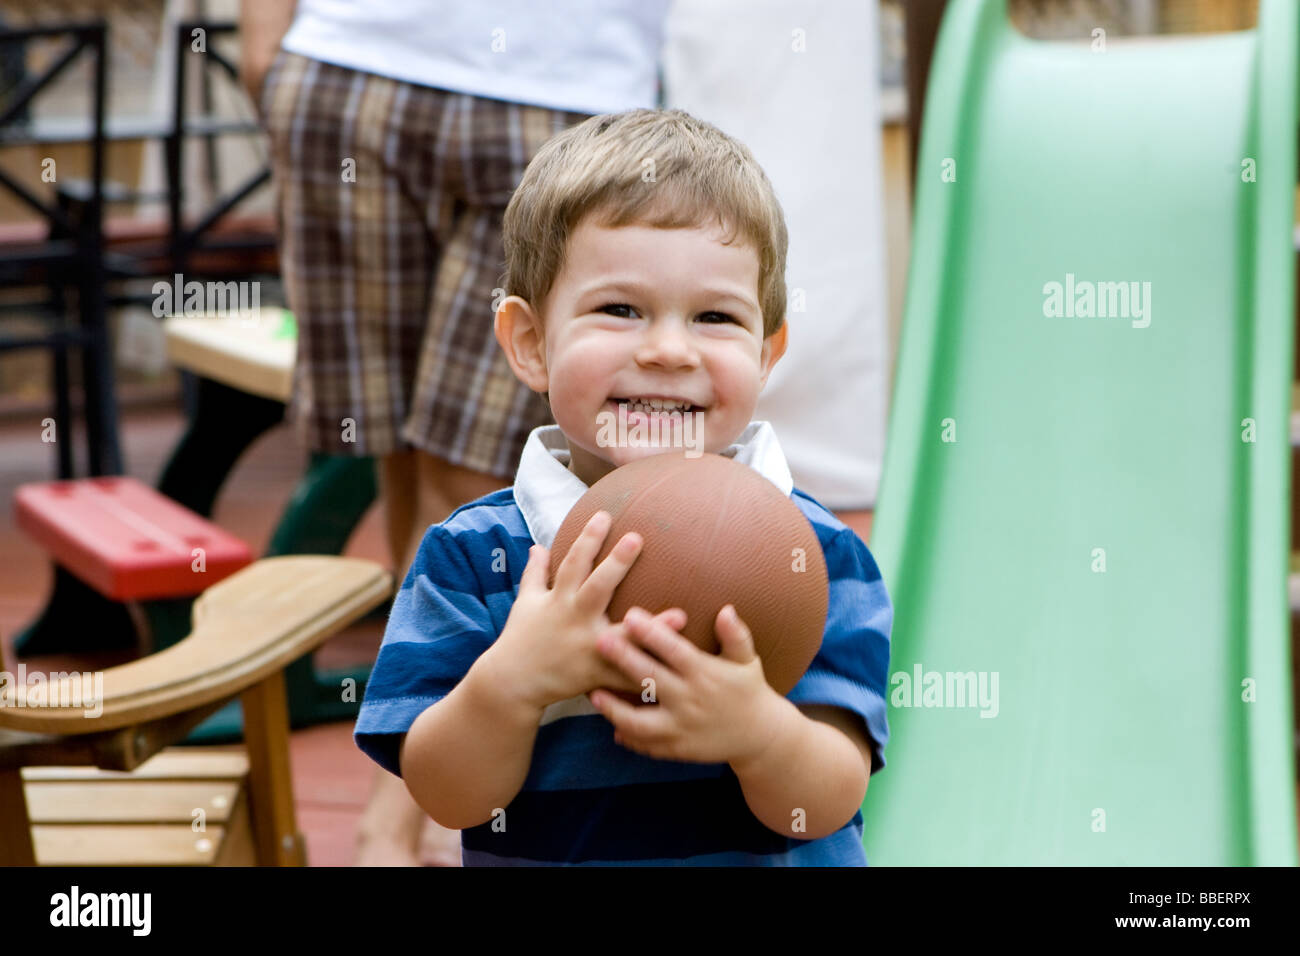 Two year old boy holding a ball, Milton, Ontario Stock Photo